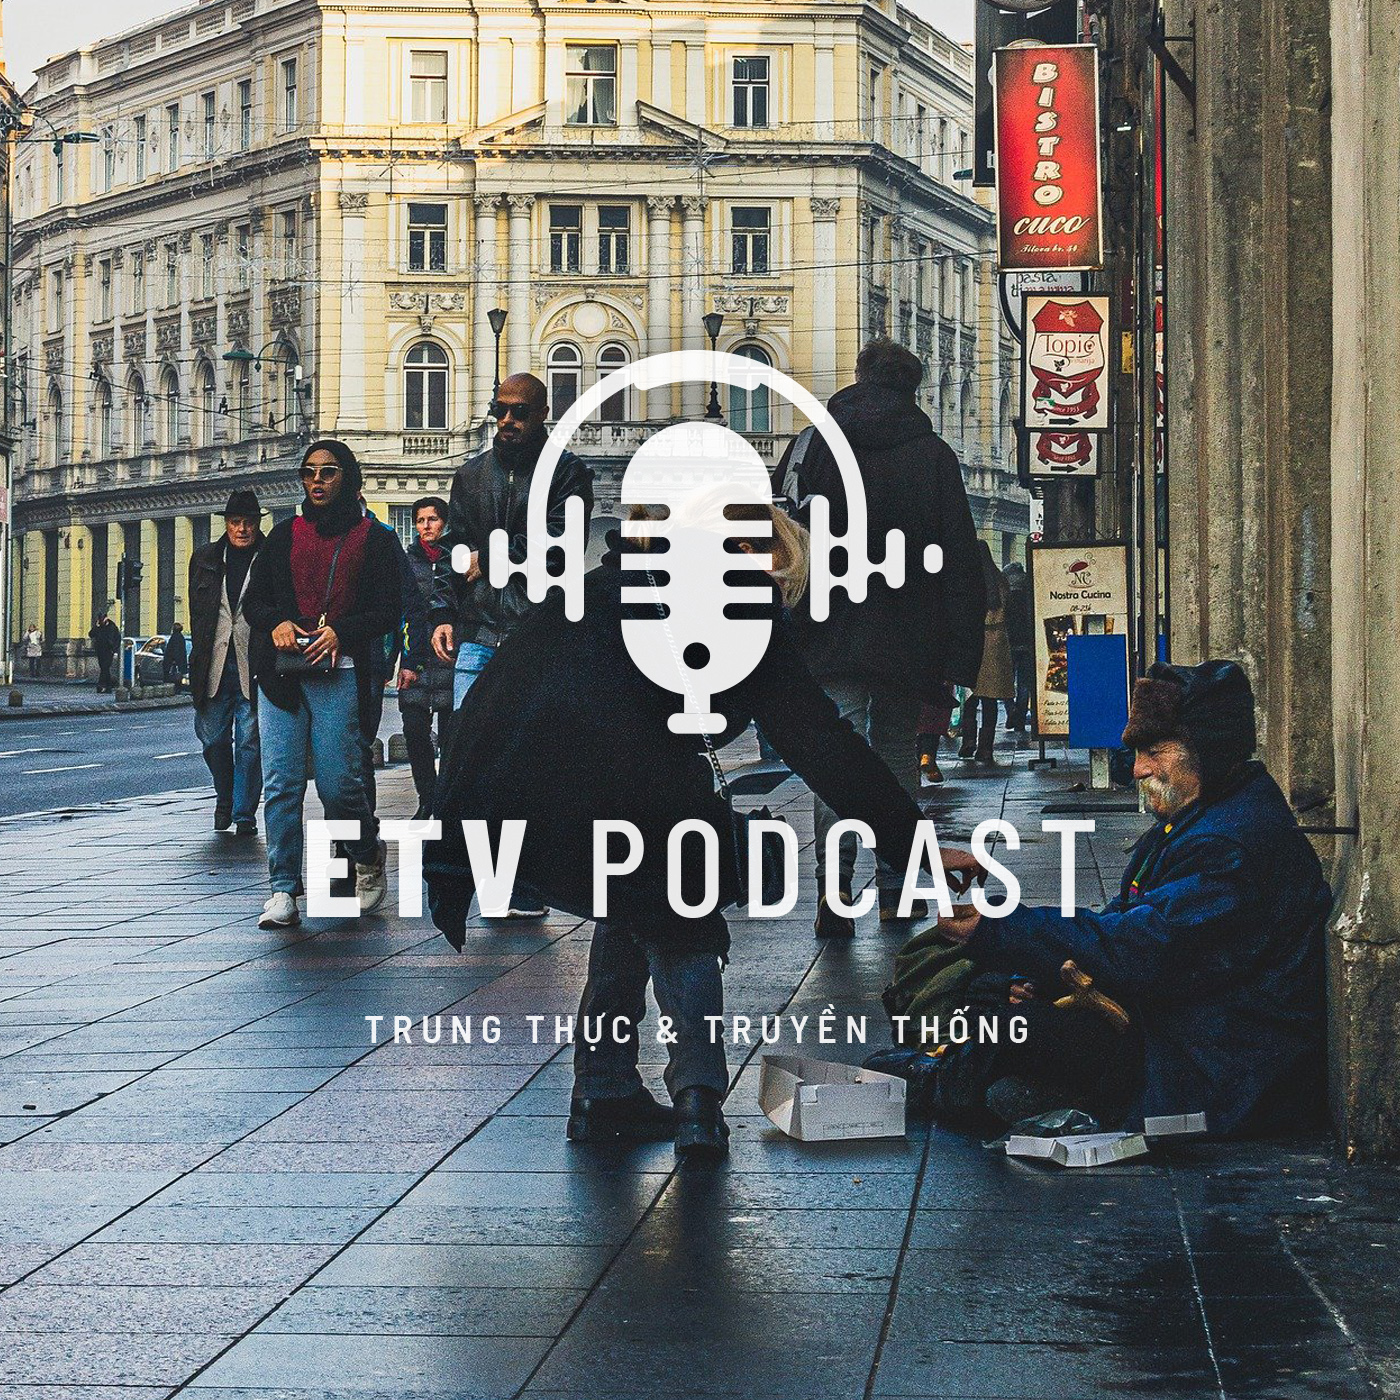 Artwork for podcast ETV Podcast